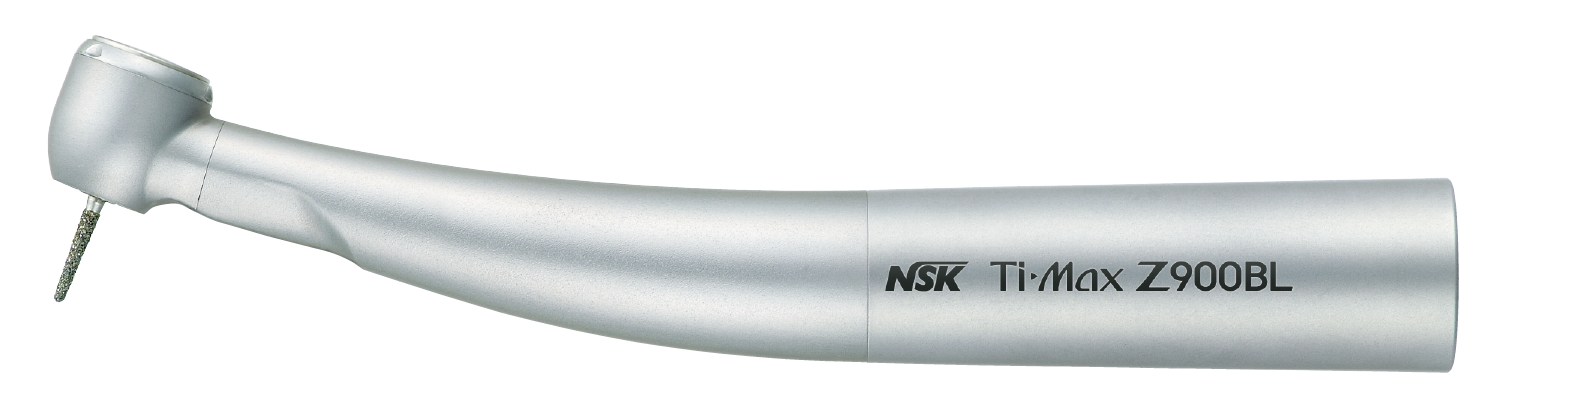 NSK Ti-Max Z900BL, Lichtturbine, 24 Watt, Bien-Air Unifix-Anschluss  -  4-fach Spray, Druckknopfspannzange, Keramik-Kugellager, Microfilter, kratzfest  | Art.Nr.:  P1117